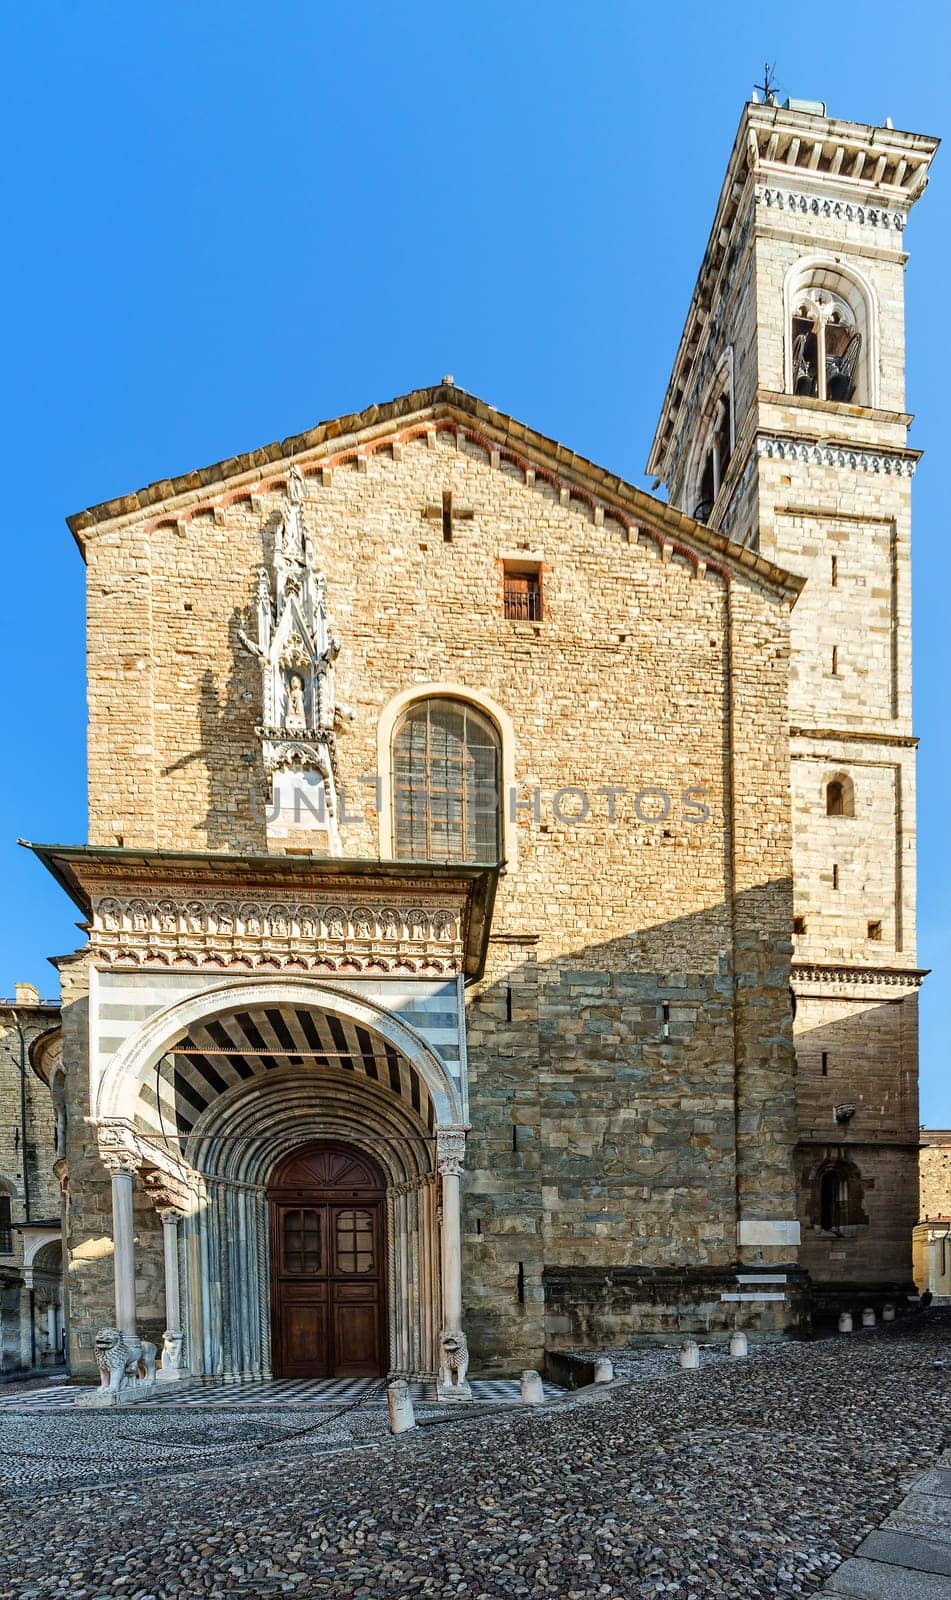 Santa Maria Maggiore by mot1963